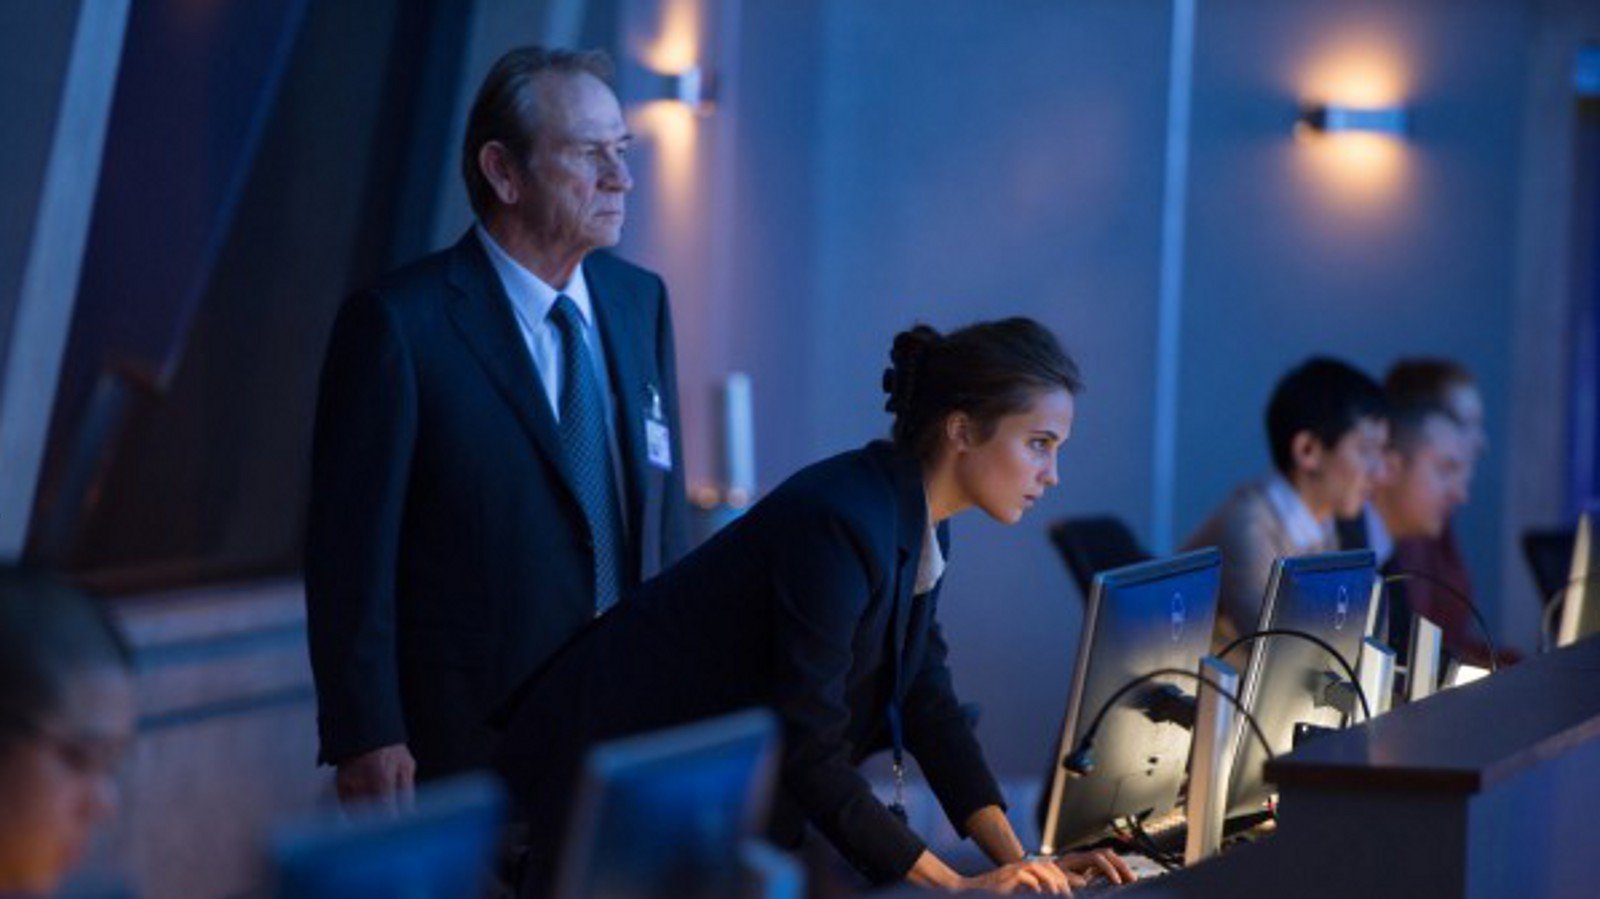 Alicia Vikander announced as lead in new Bourne movie